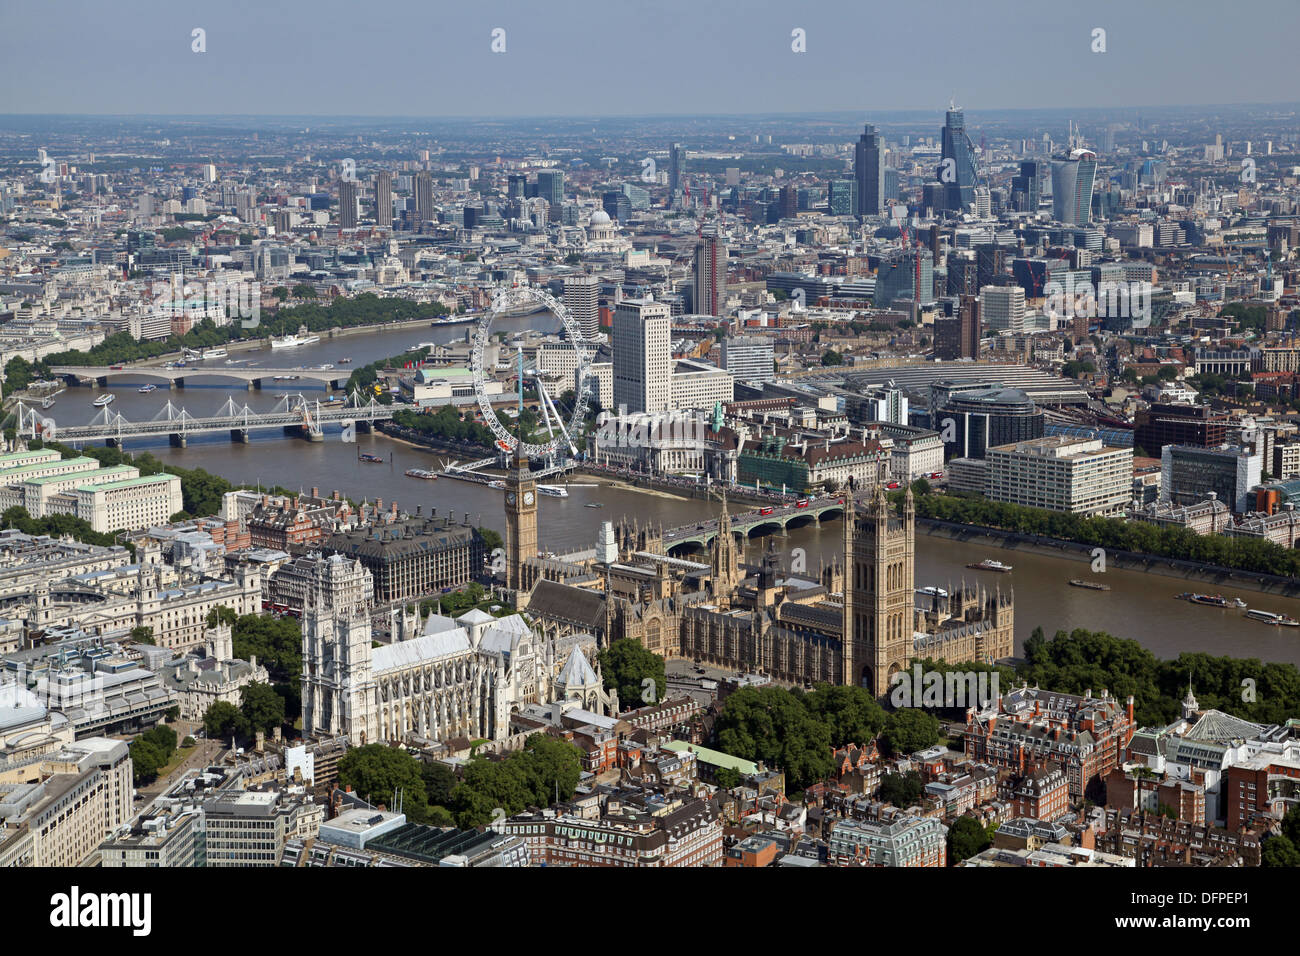 Vista aerea dell'Abbazia di Westminster, La Casa del Parlamento, il London Eye, Westminster Bridge, South Bank, Thames & City of London Foto Stock